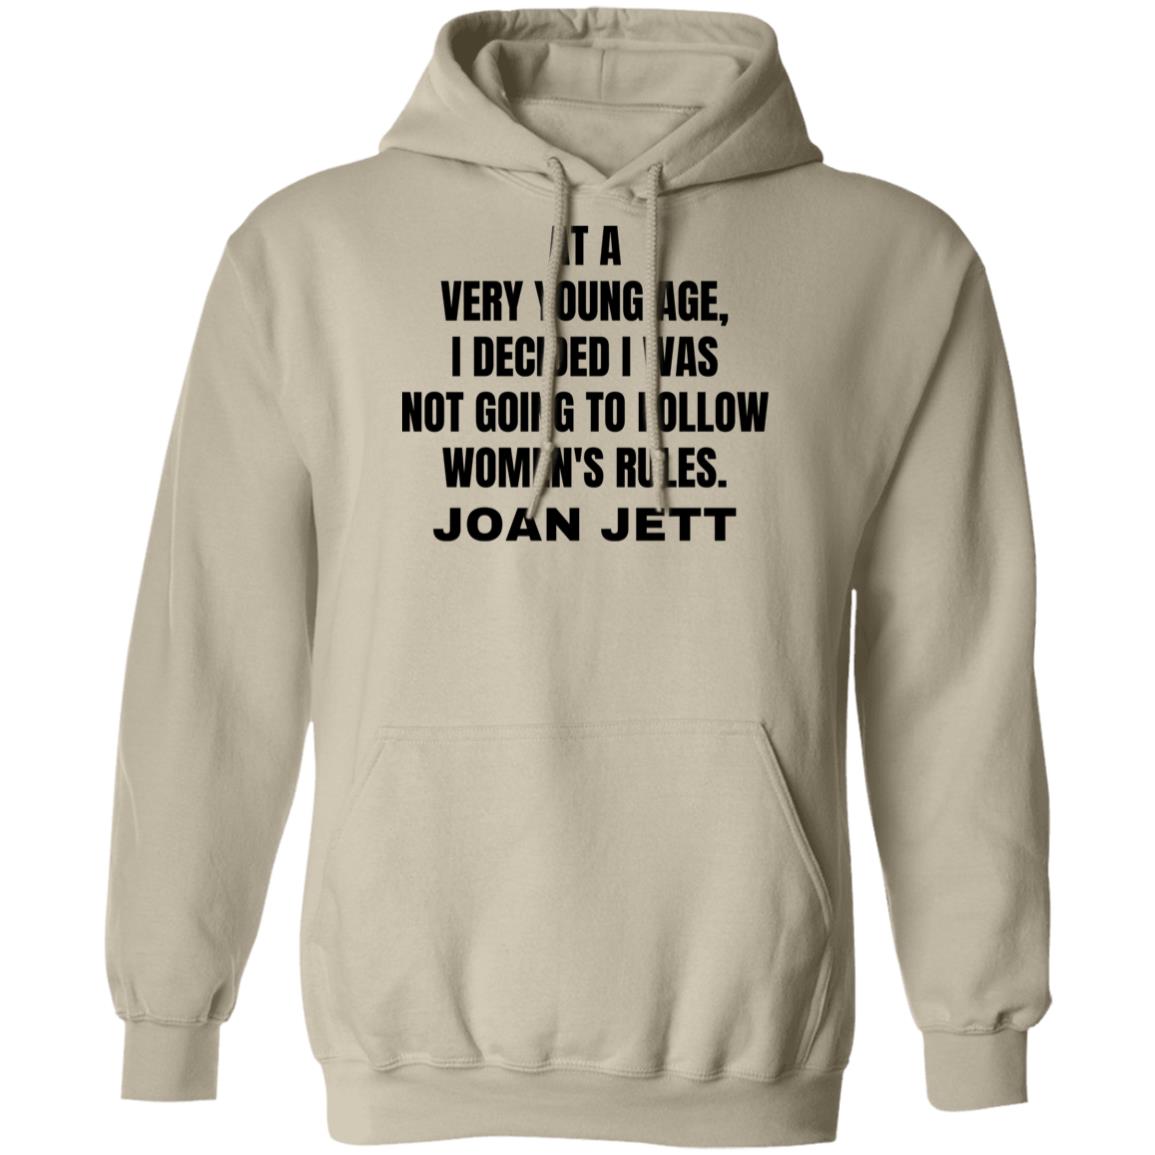 Joan Jett Women's Rules Quote Hooded Sweatshirt